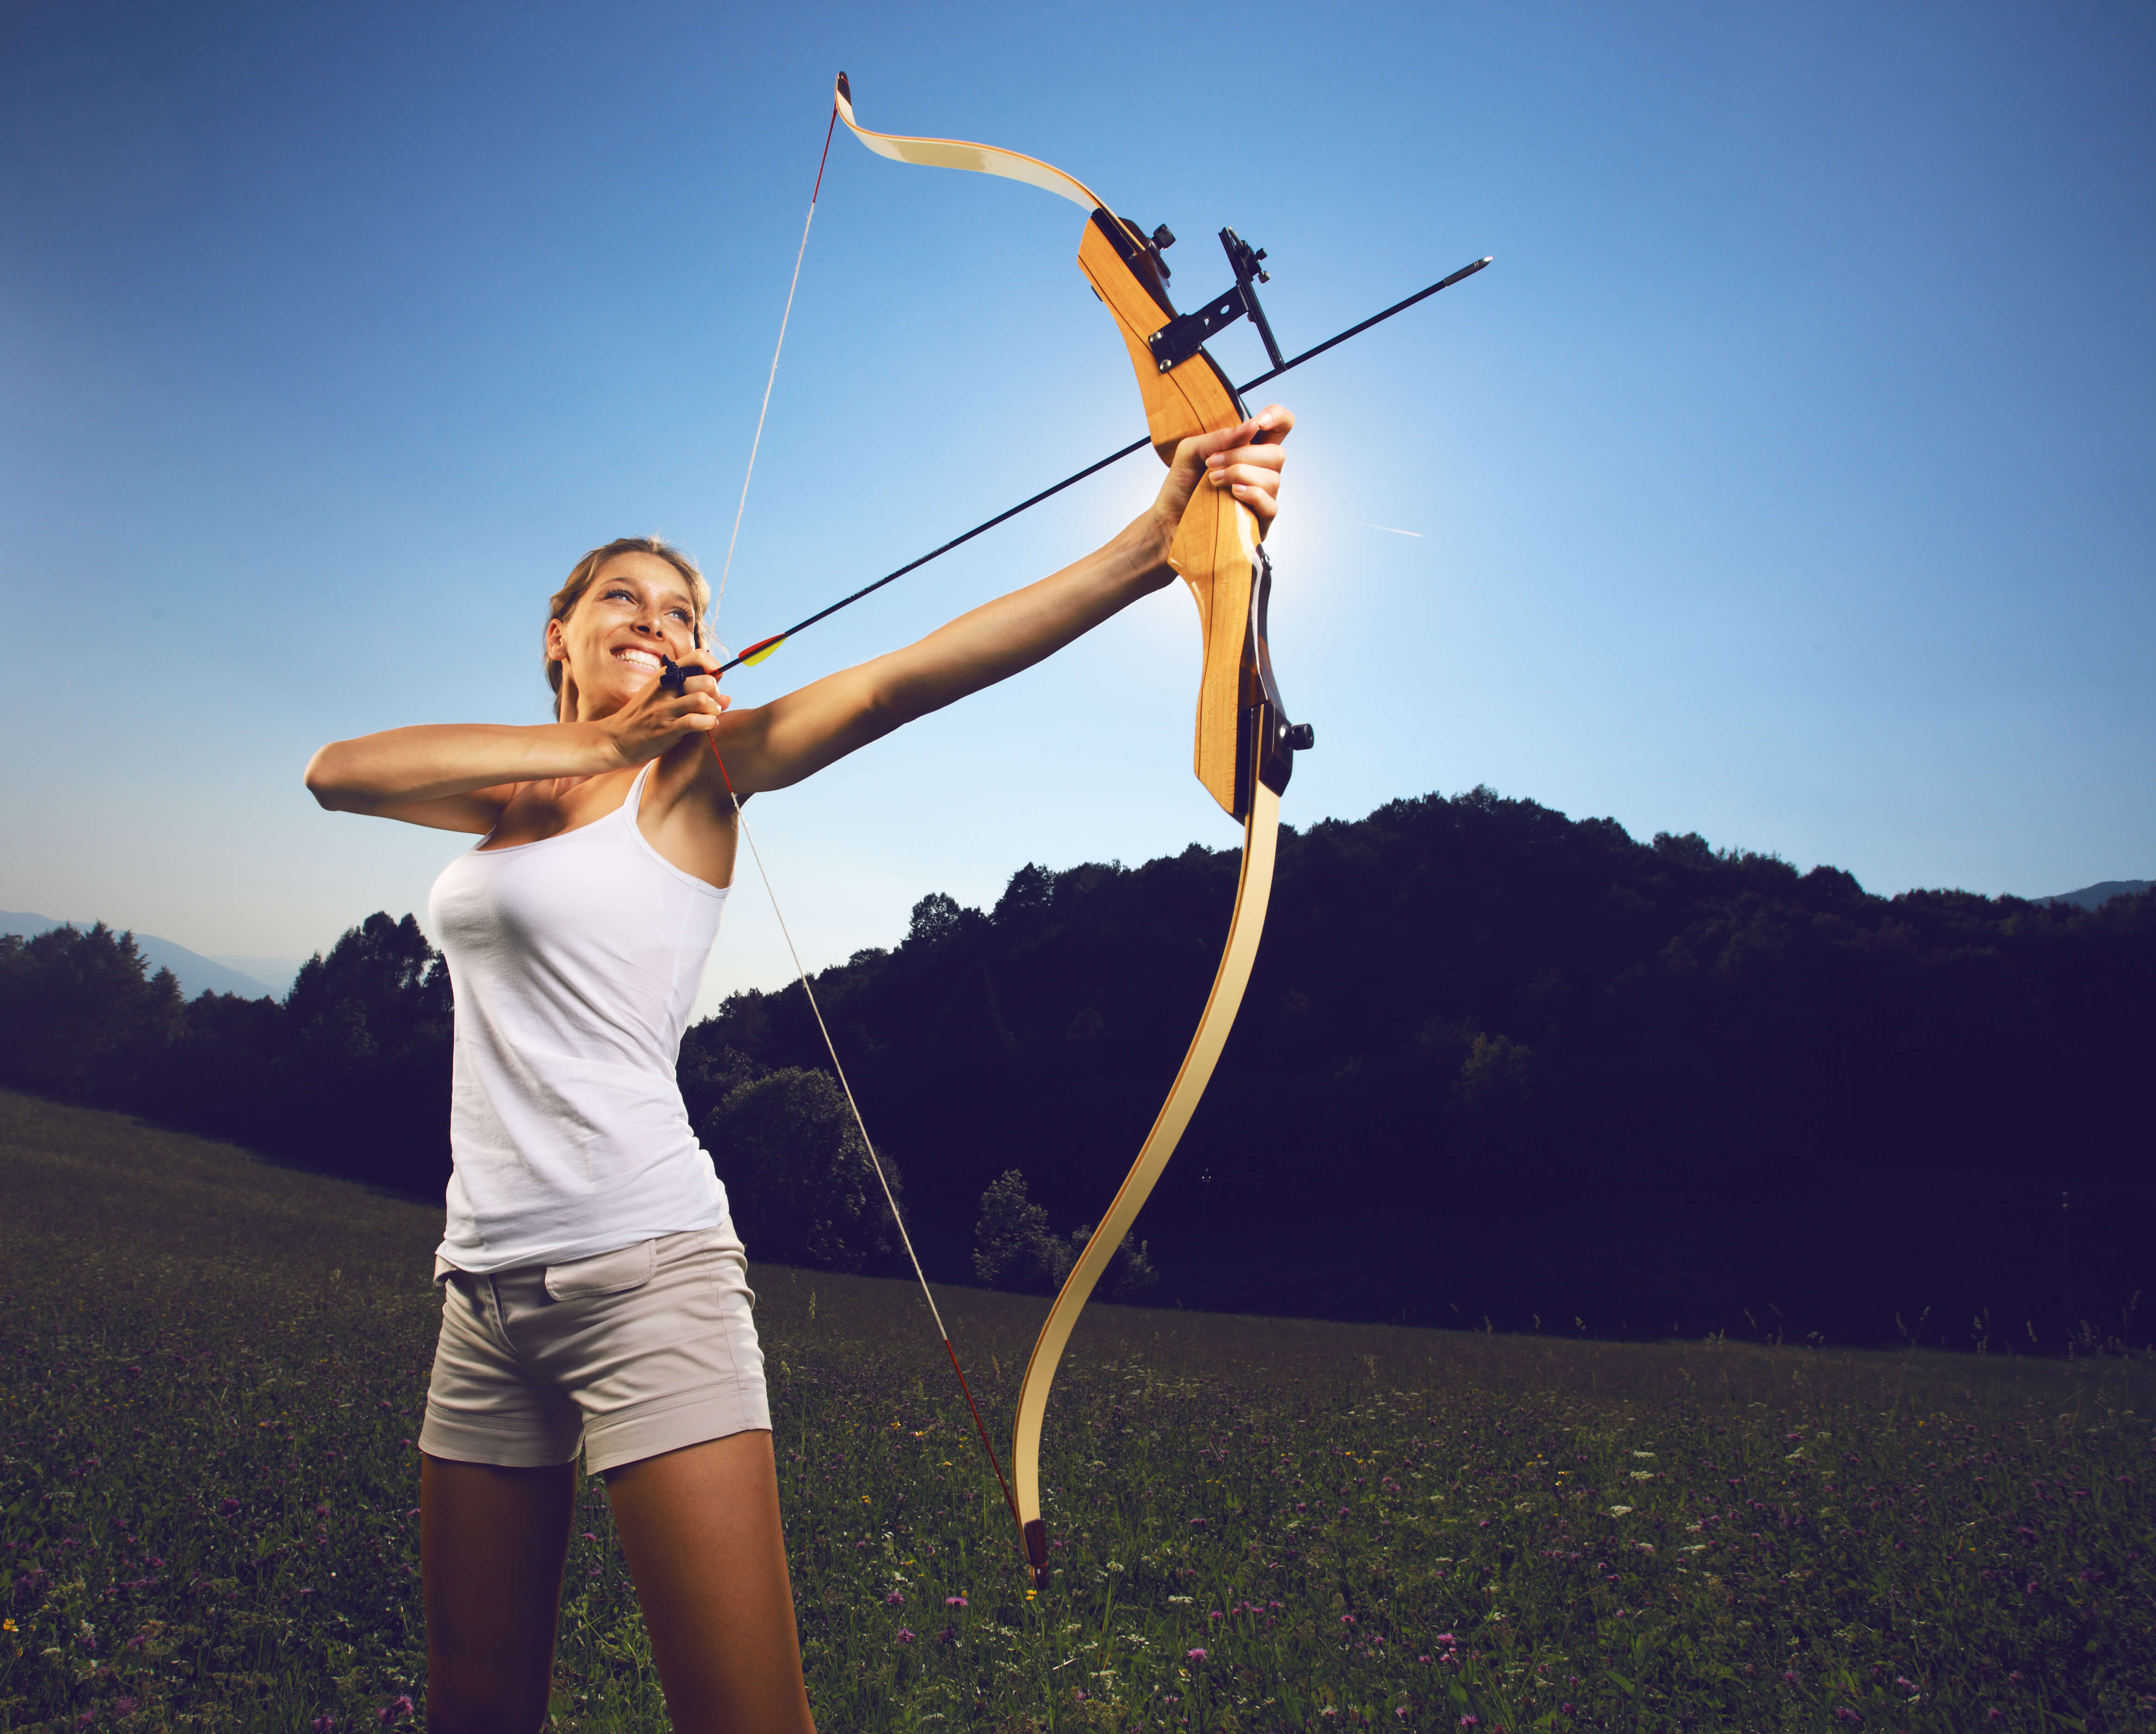 History of archery. Field archery